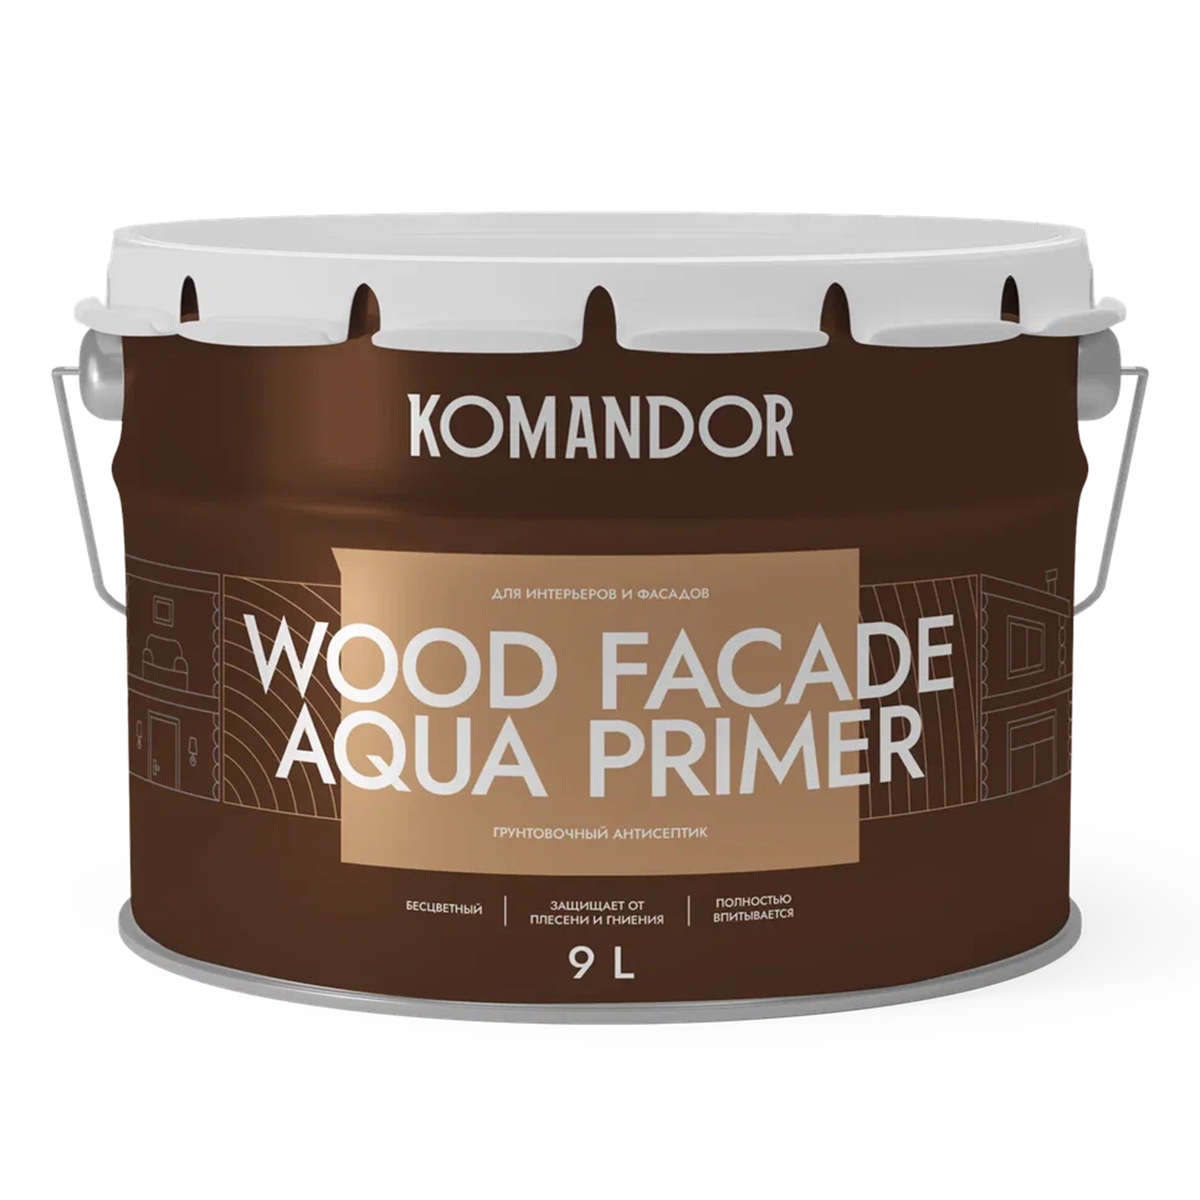 Грунт-антисептик для дерева Komandor Wood Facade Aqua Primer, 9 л нилпа про плант   нейтральный грунт для аквариумных растений 6 кг